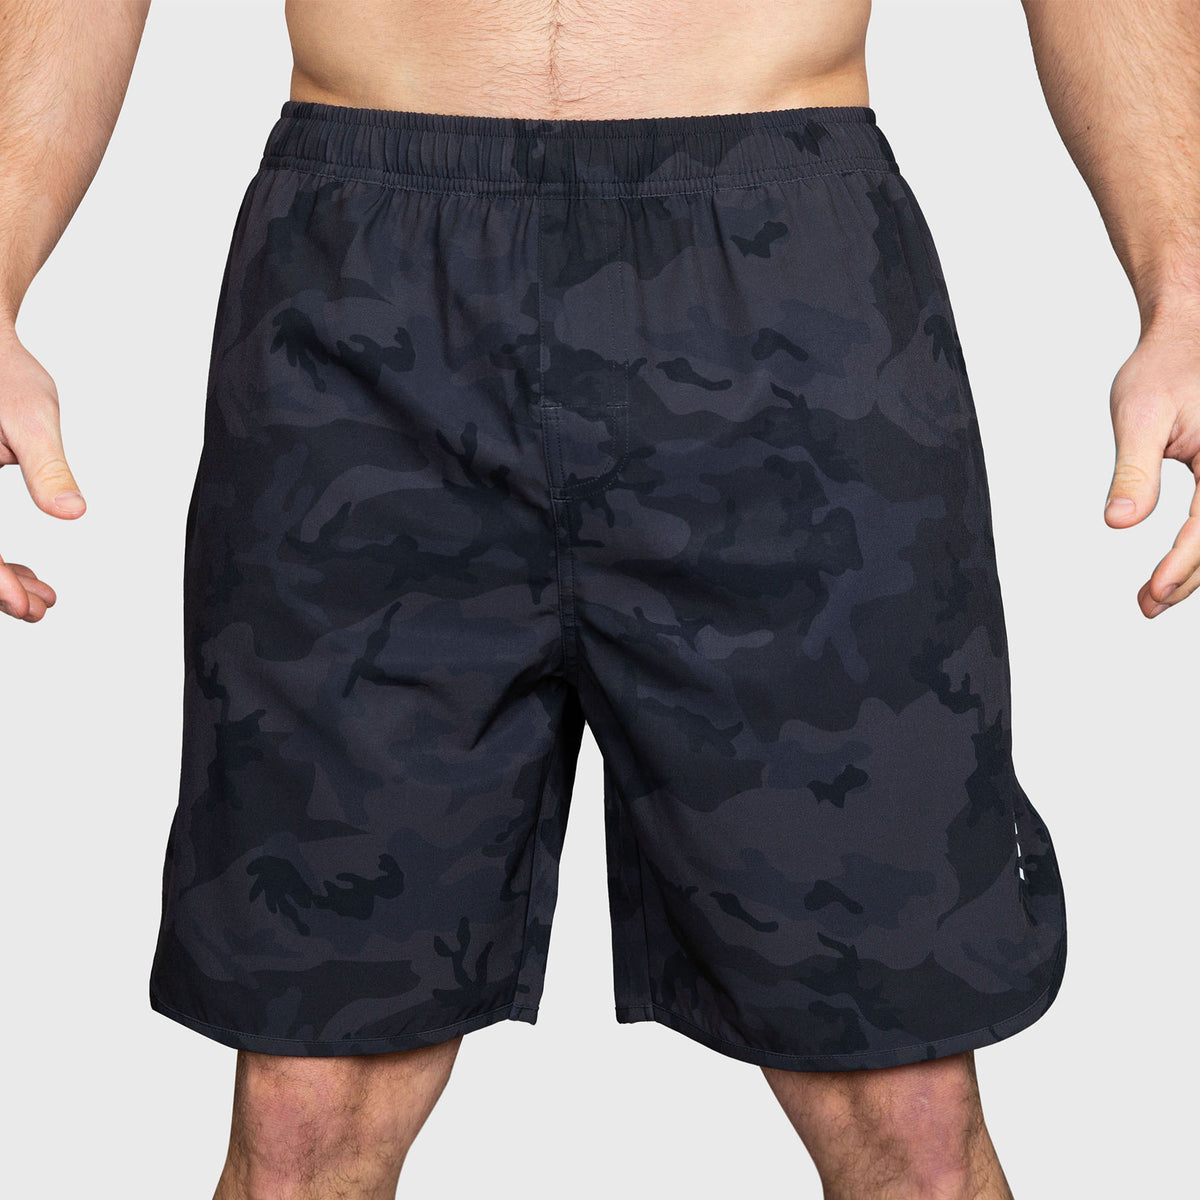 TWL - Men's Flex Shorts 3.0 - Black Camo – The WOD Life